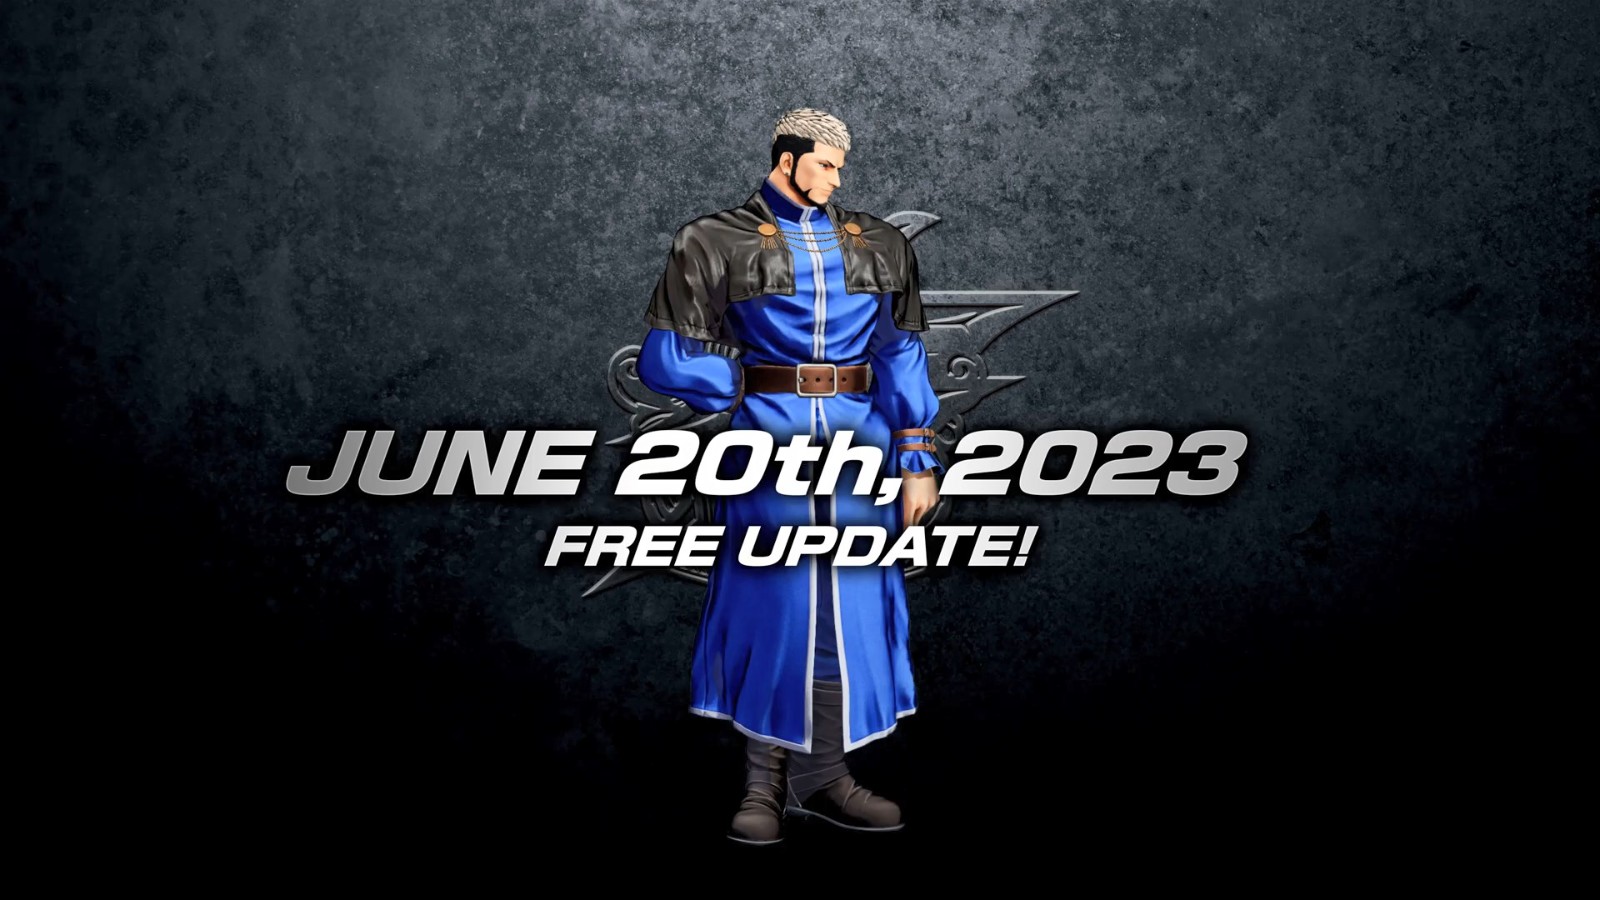 《拳皇15》免费DLC角色“高尼茨” 6月20日上线